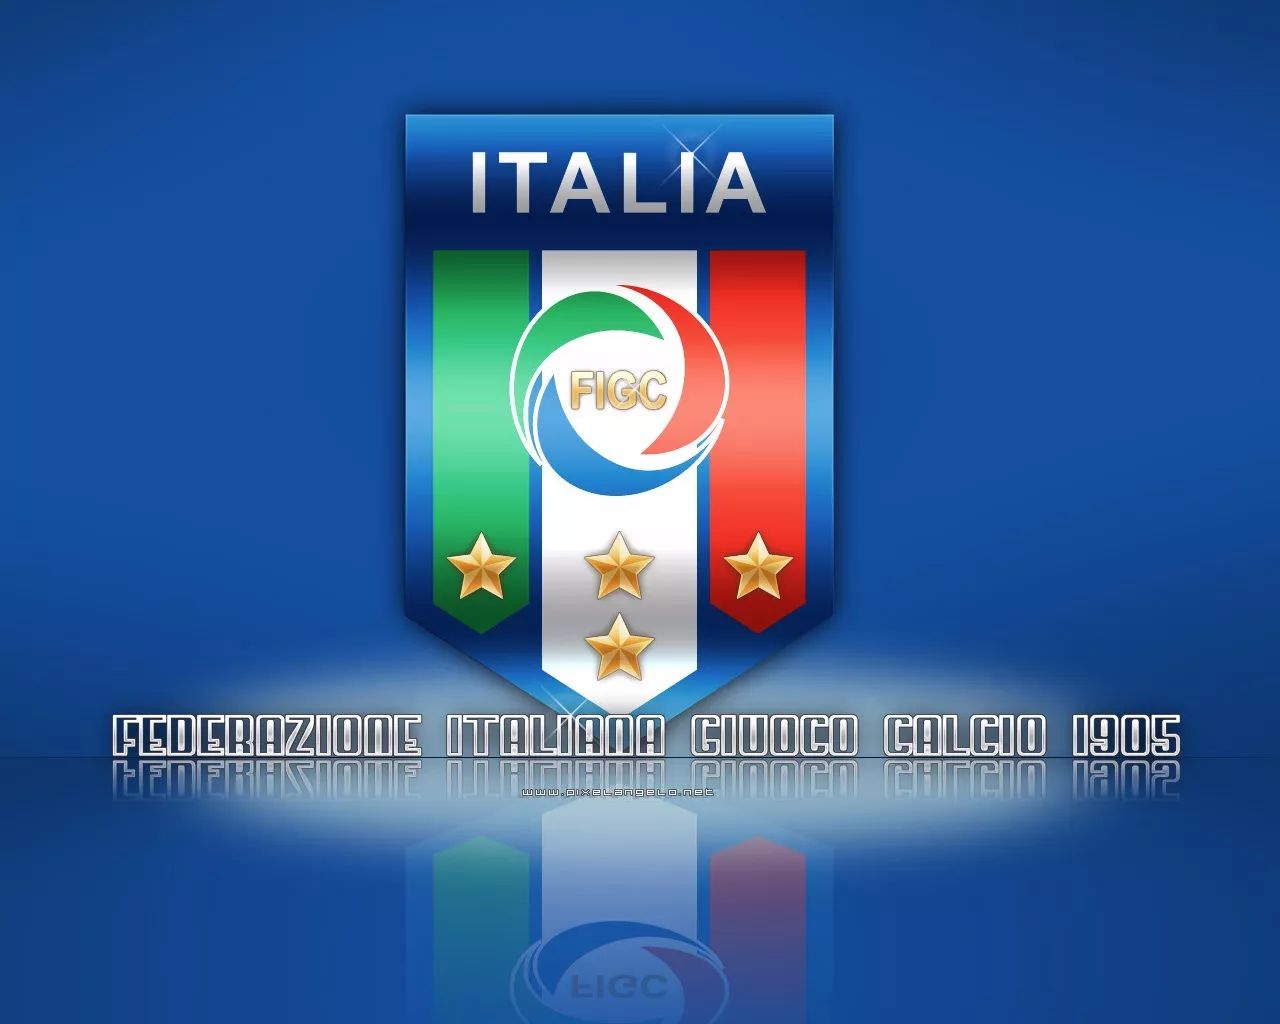 意大利国家队精美壁纸免费送!